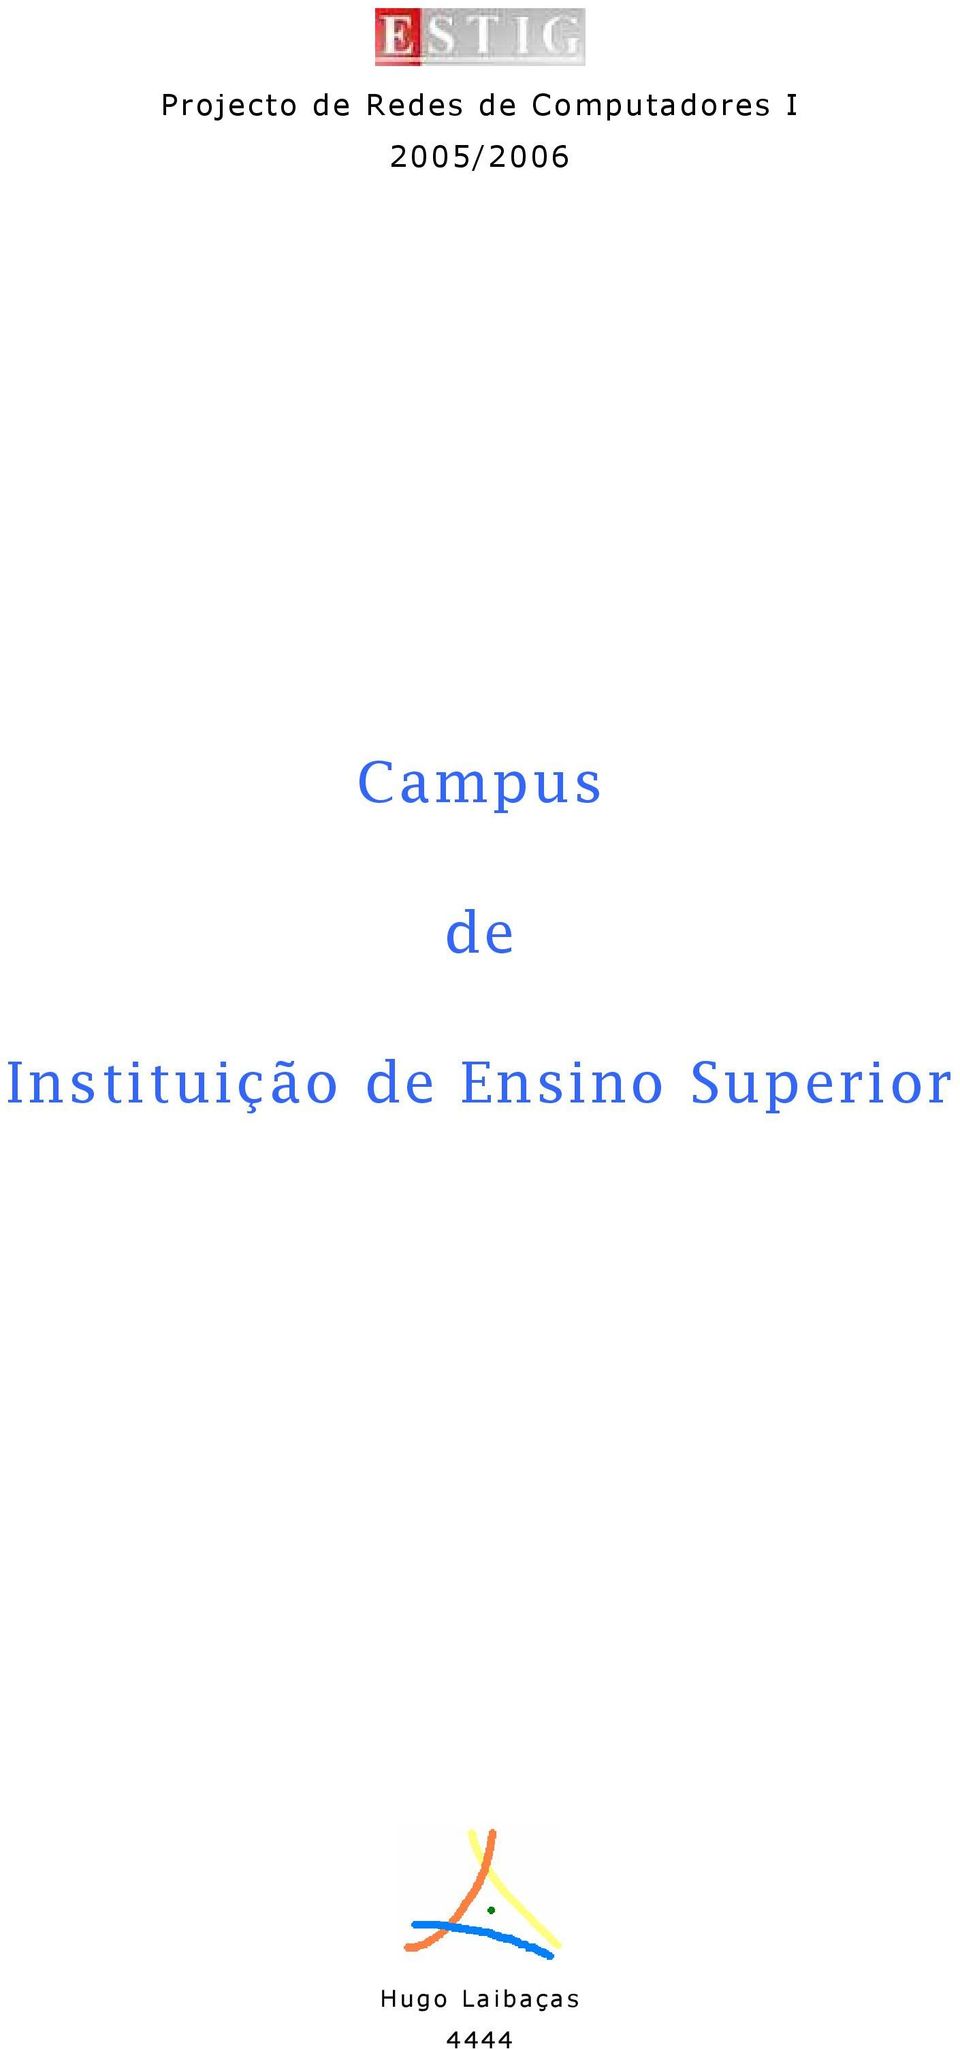 Campus de Instituição de